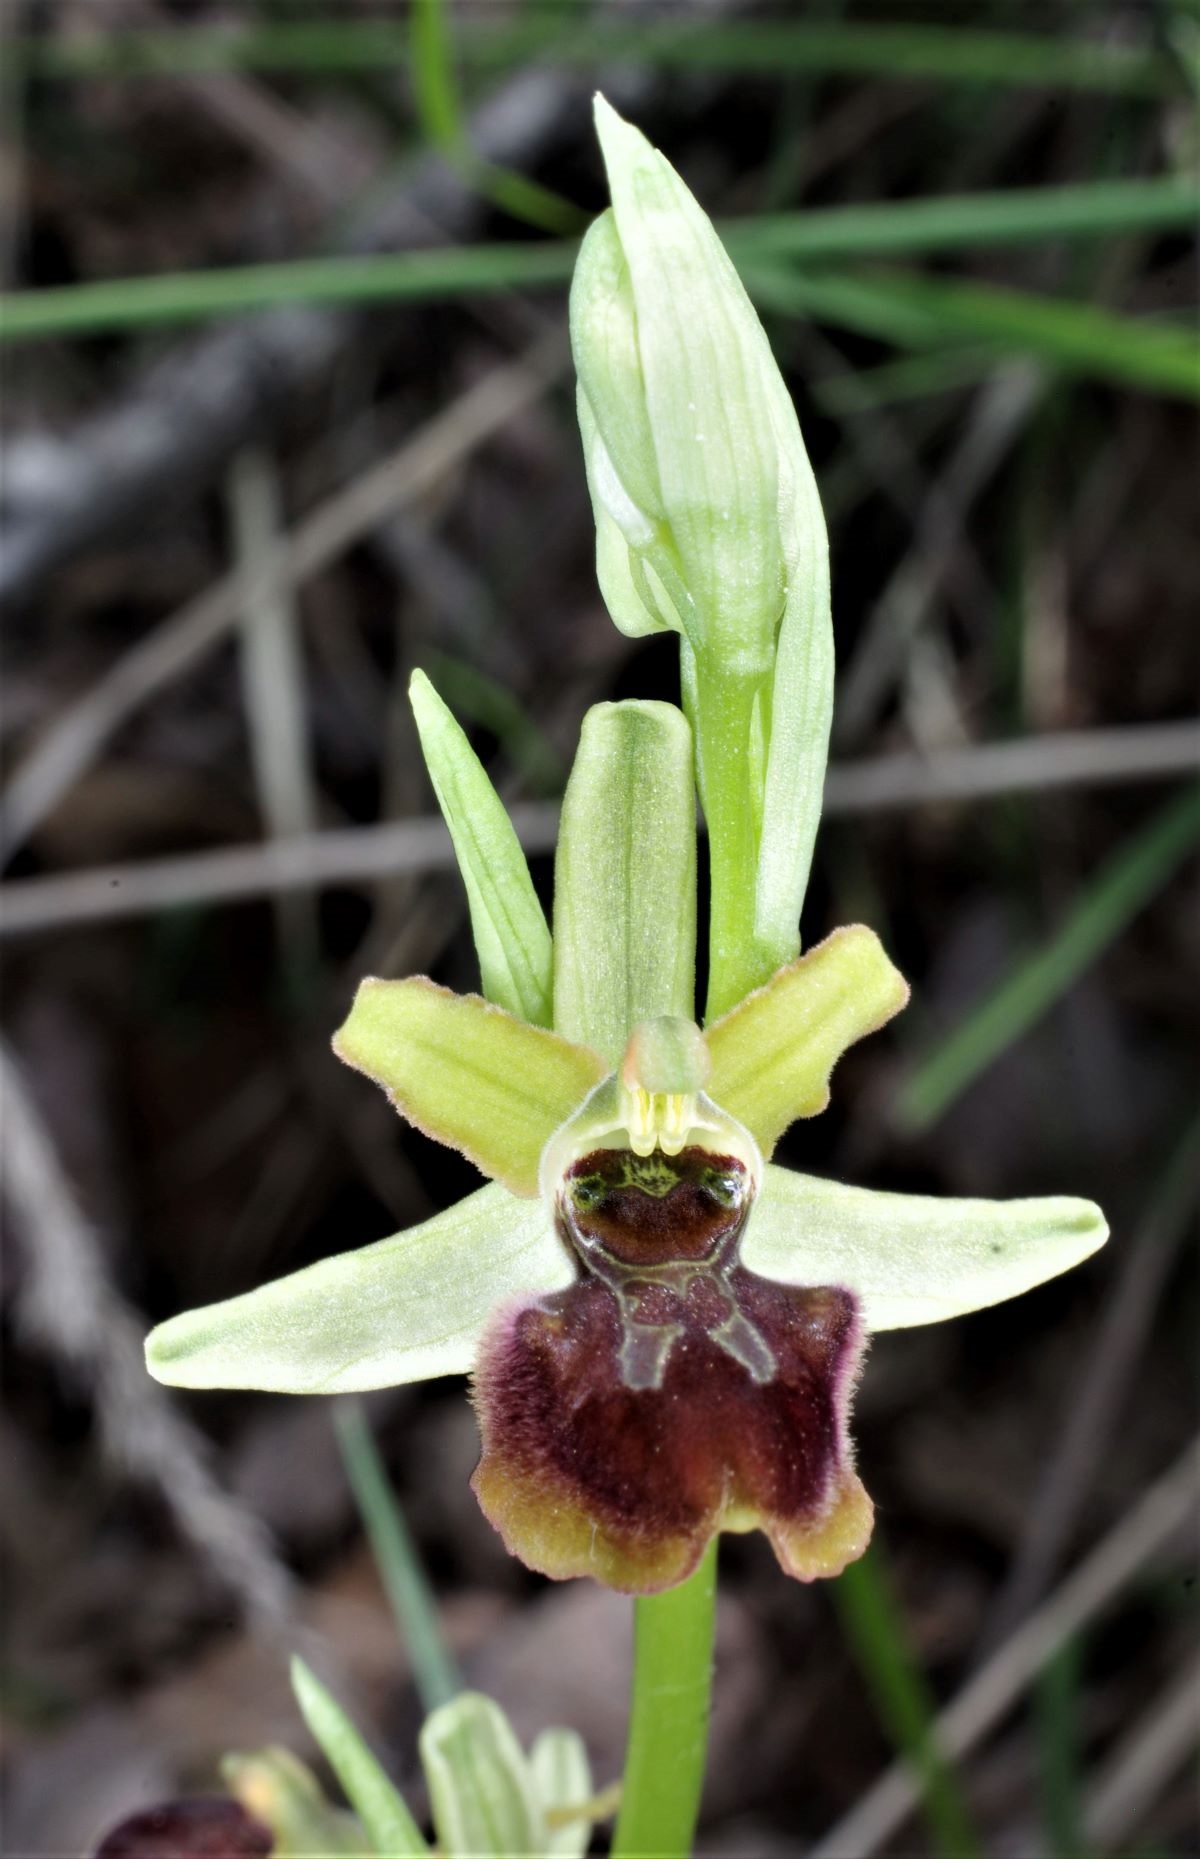 IMGP5271_Ophrys sphegodes subsp. litigiosa - Oasi Ghirardi.jpg